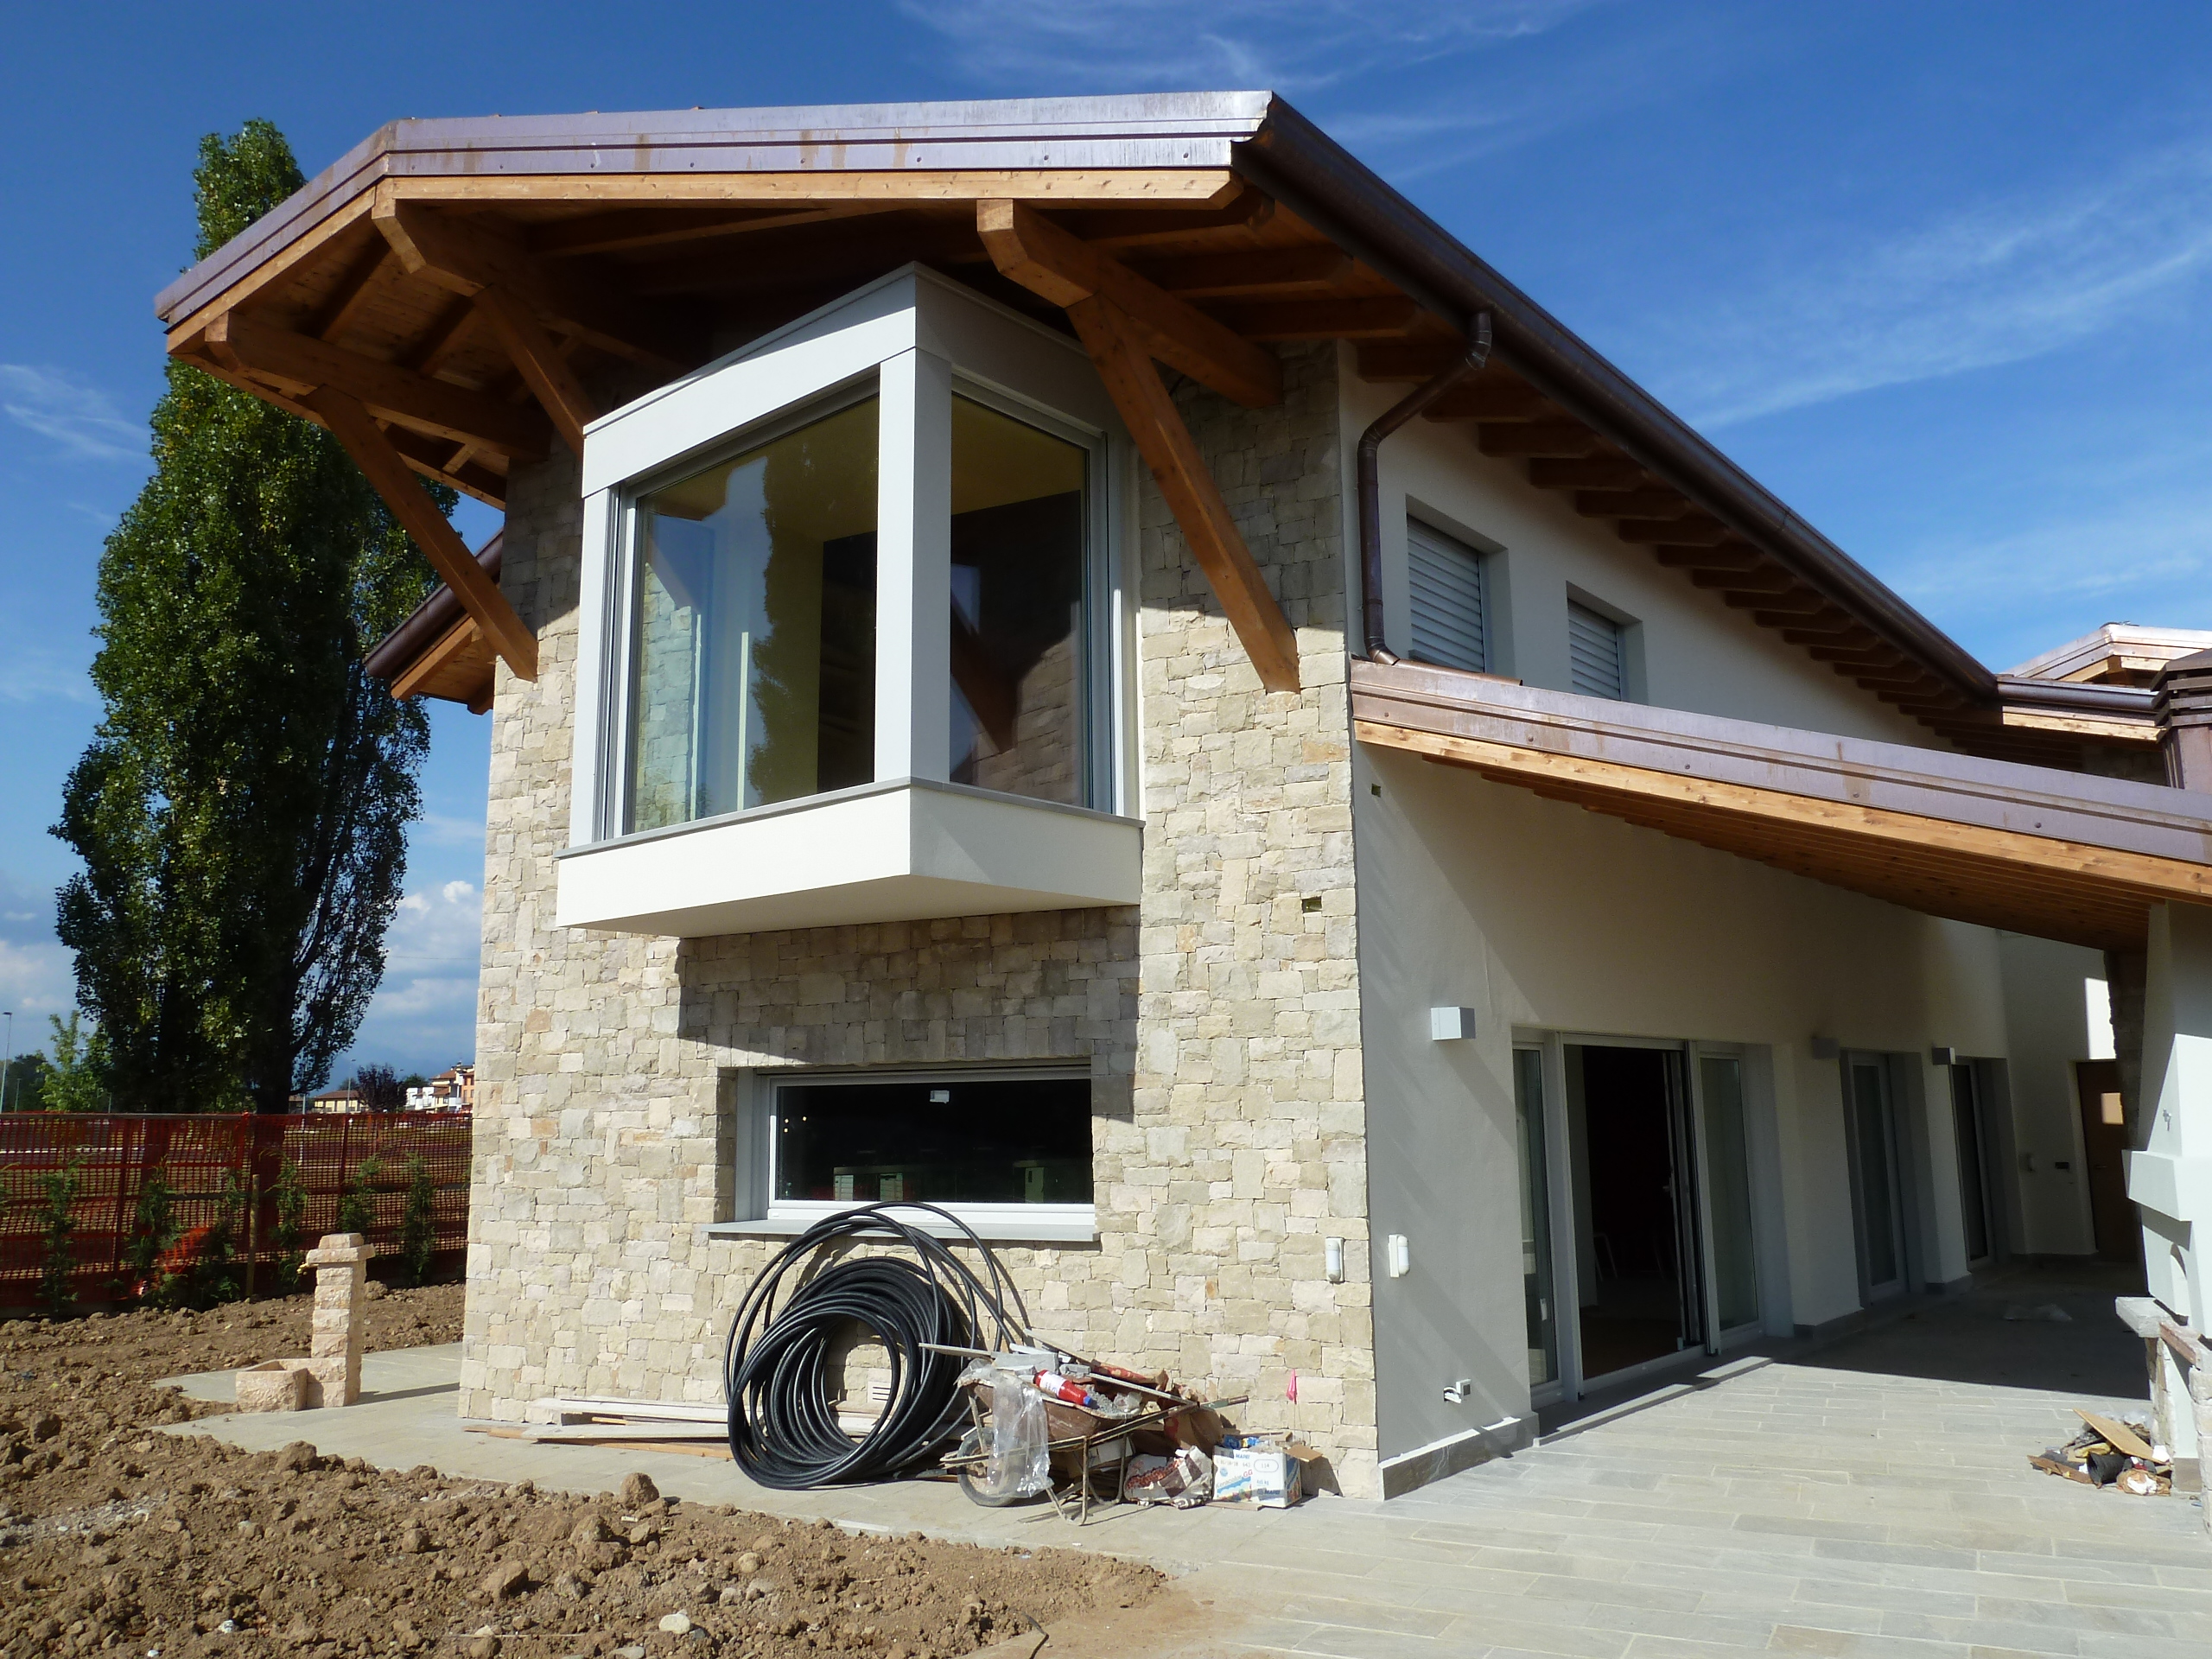 Nuova villa unifamiliare in comune di Lurano (BG)